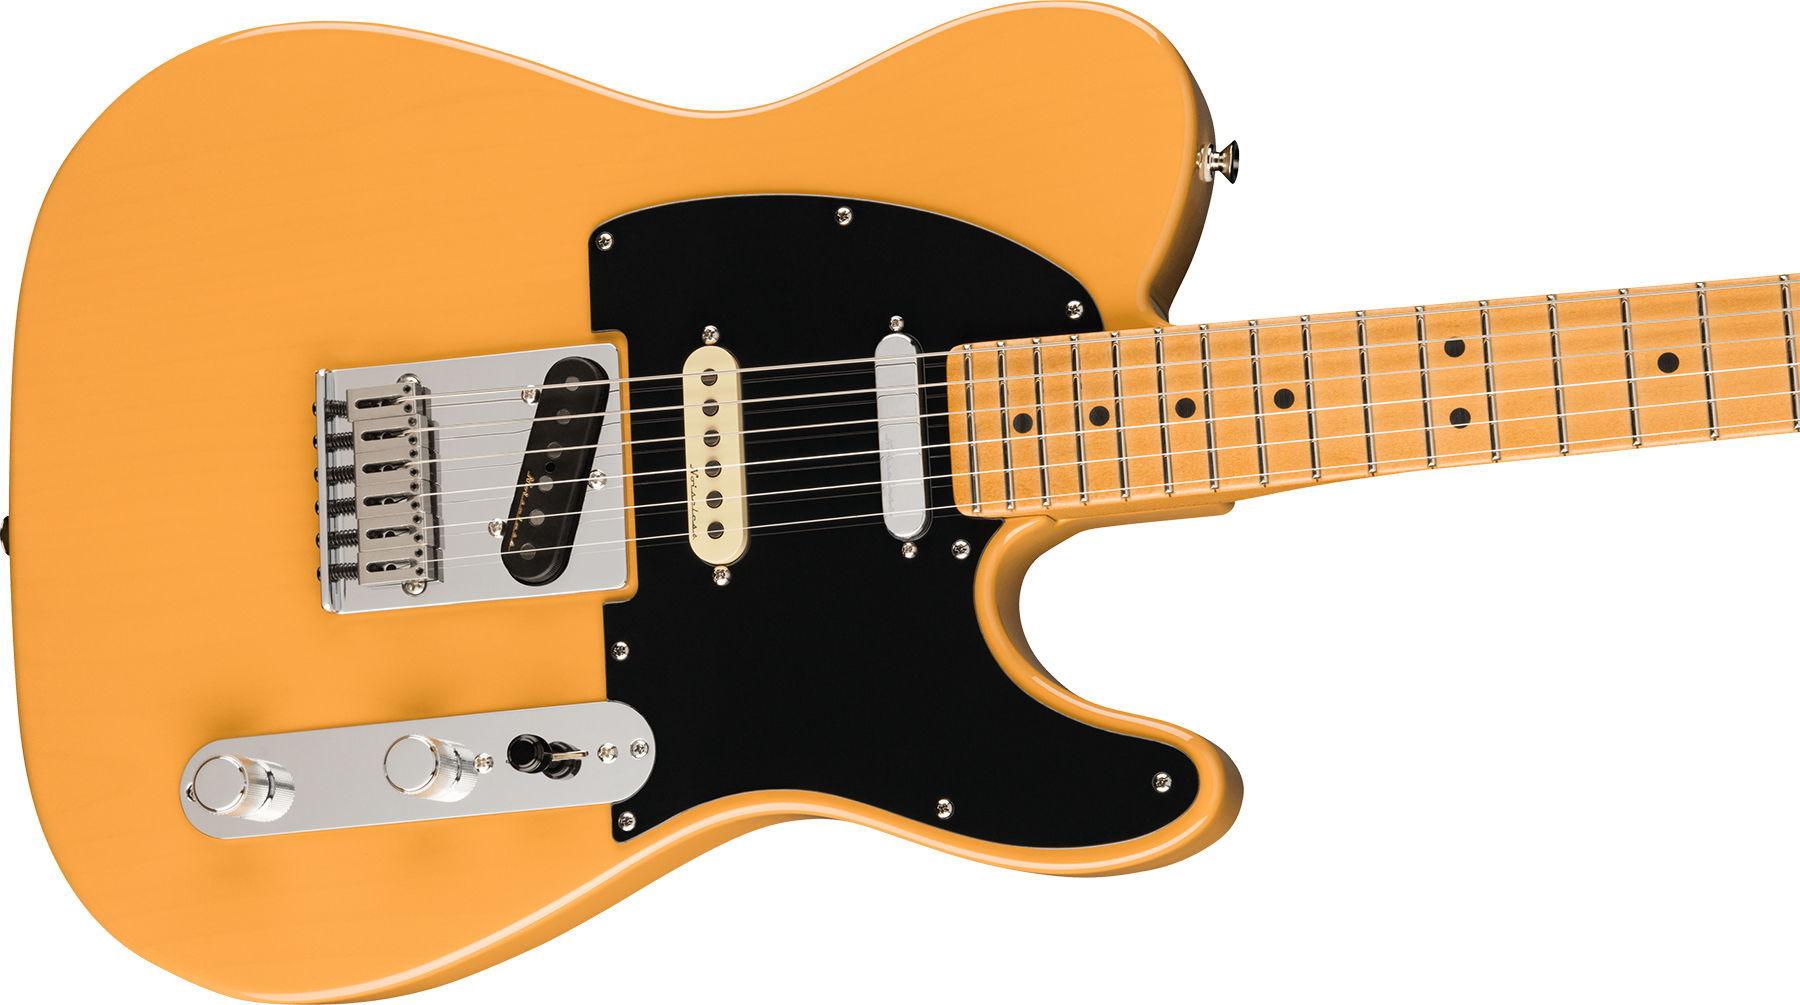 Fender Tele Player Plus Nashville Mex 3s Ht Mn - Butterscotch Blonde - Guitarra eléctrica con forma de tel - Variation 2